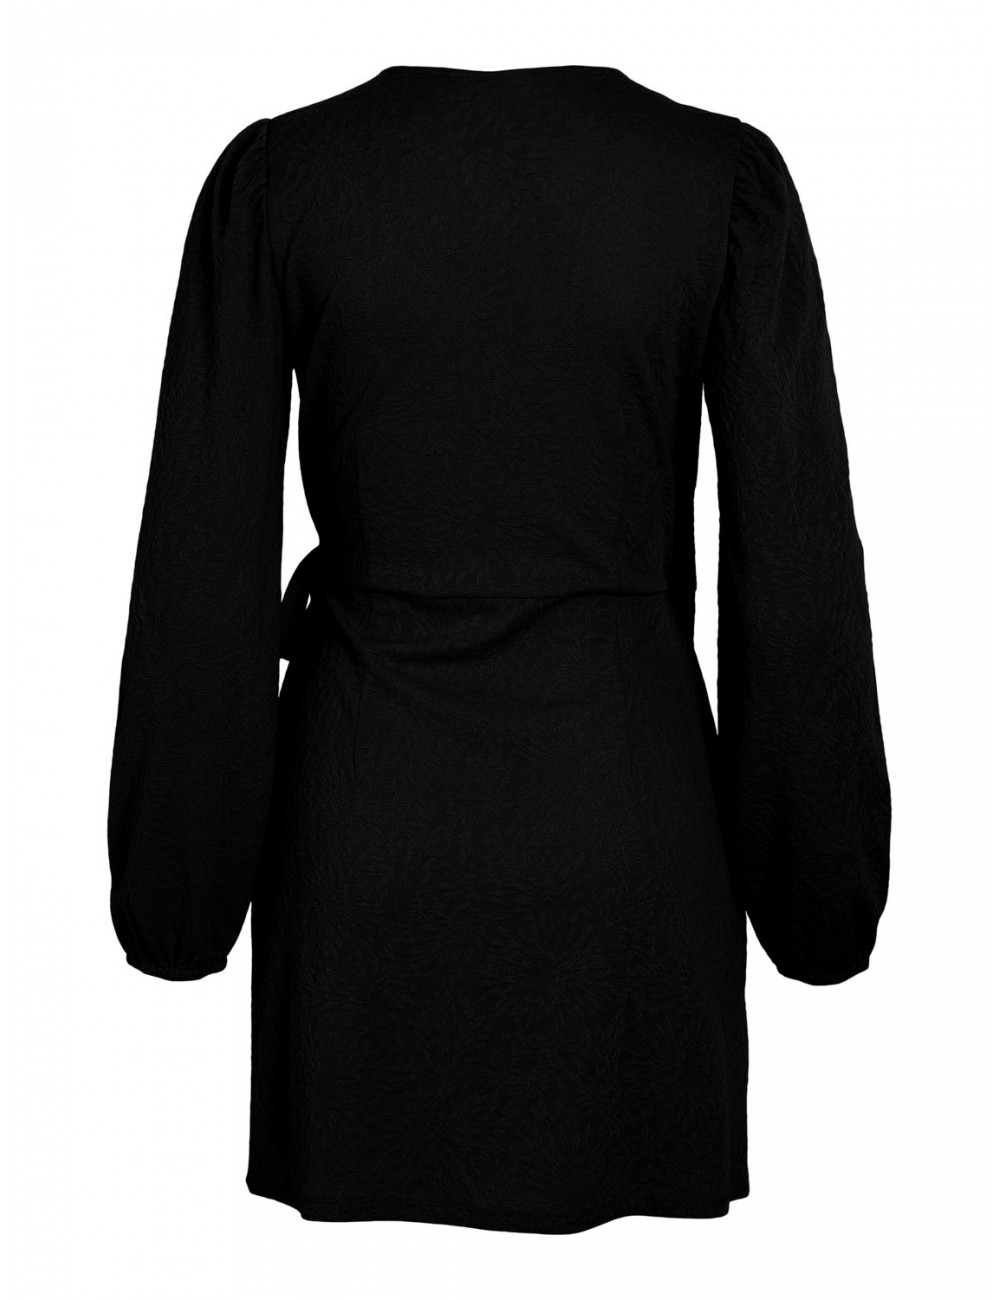 Vestido Annika de punto jacquard brocado en color negro. Marca Vila.